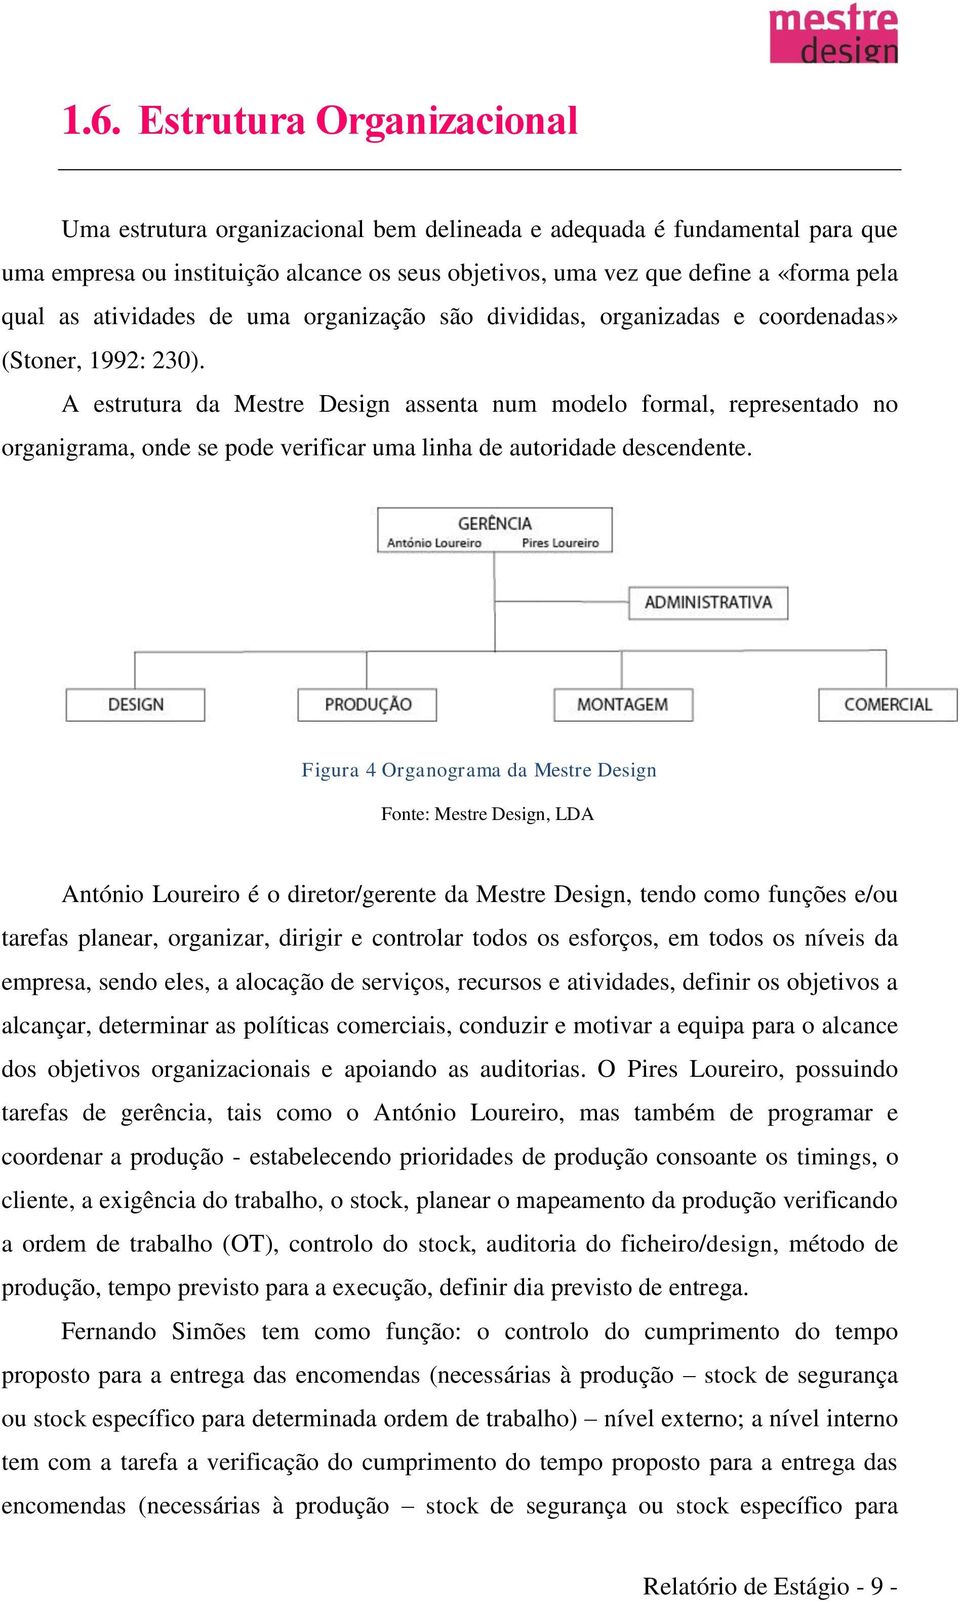 A estrutura da Mestre Design assenta num modelo formal, representado no organigrama, onde se pode verificar uma linha de autoridade descendente.